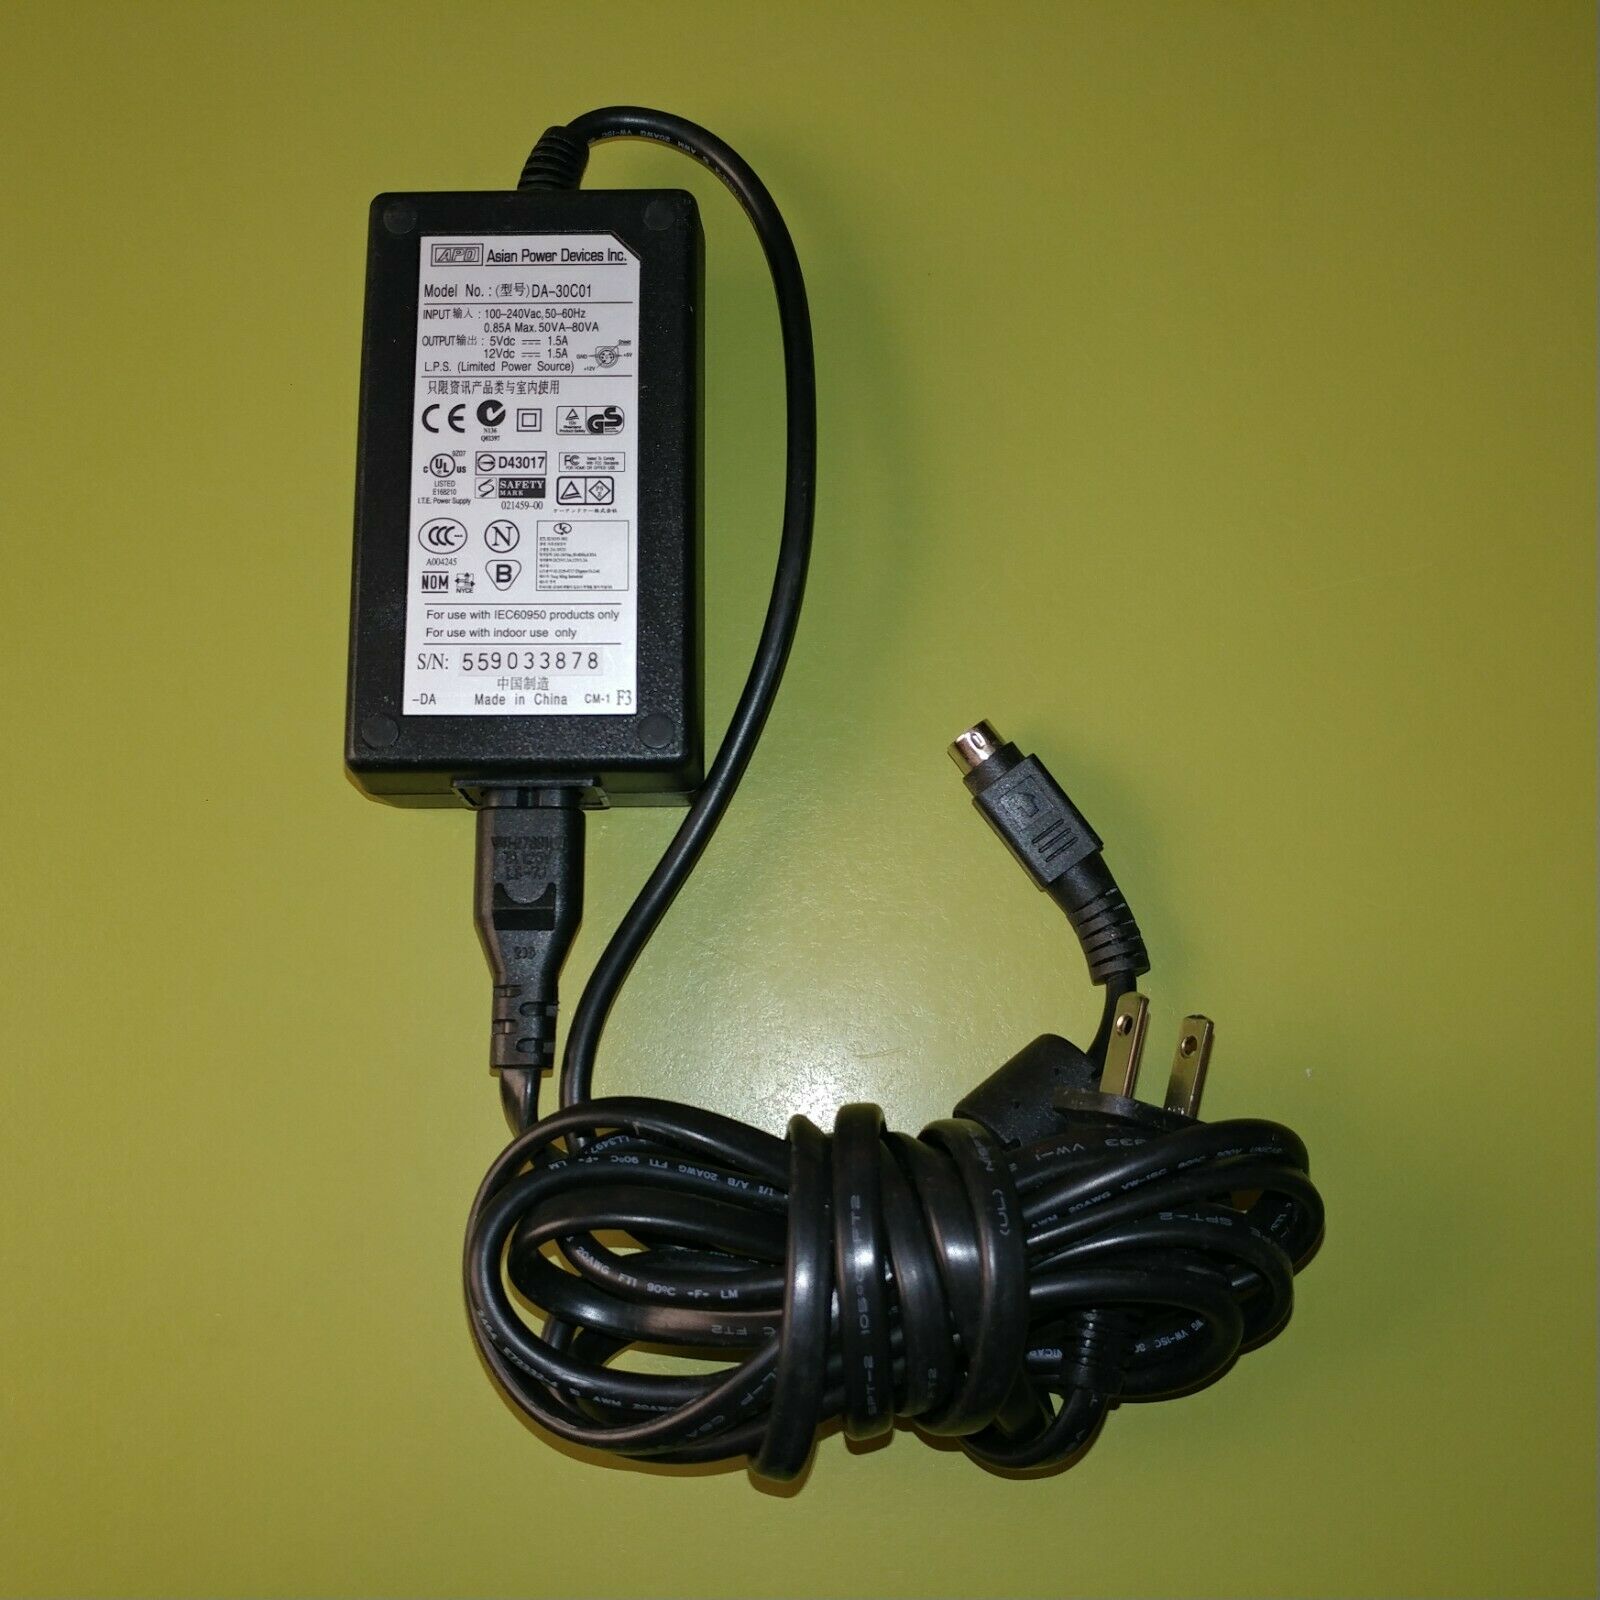 Genuine APD Iomega AC Adapter Power Supply Model # DA-30C01 12Vdc 1.5A Modular: No Type: AC/DC Adapter Model: DA-30C